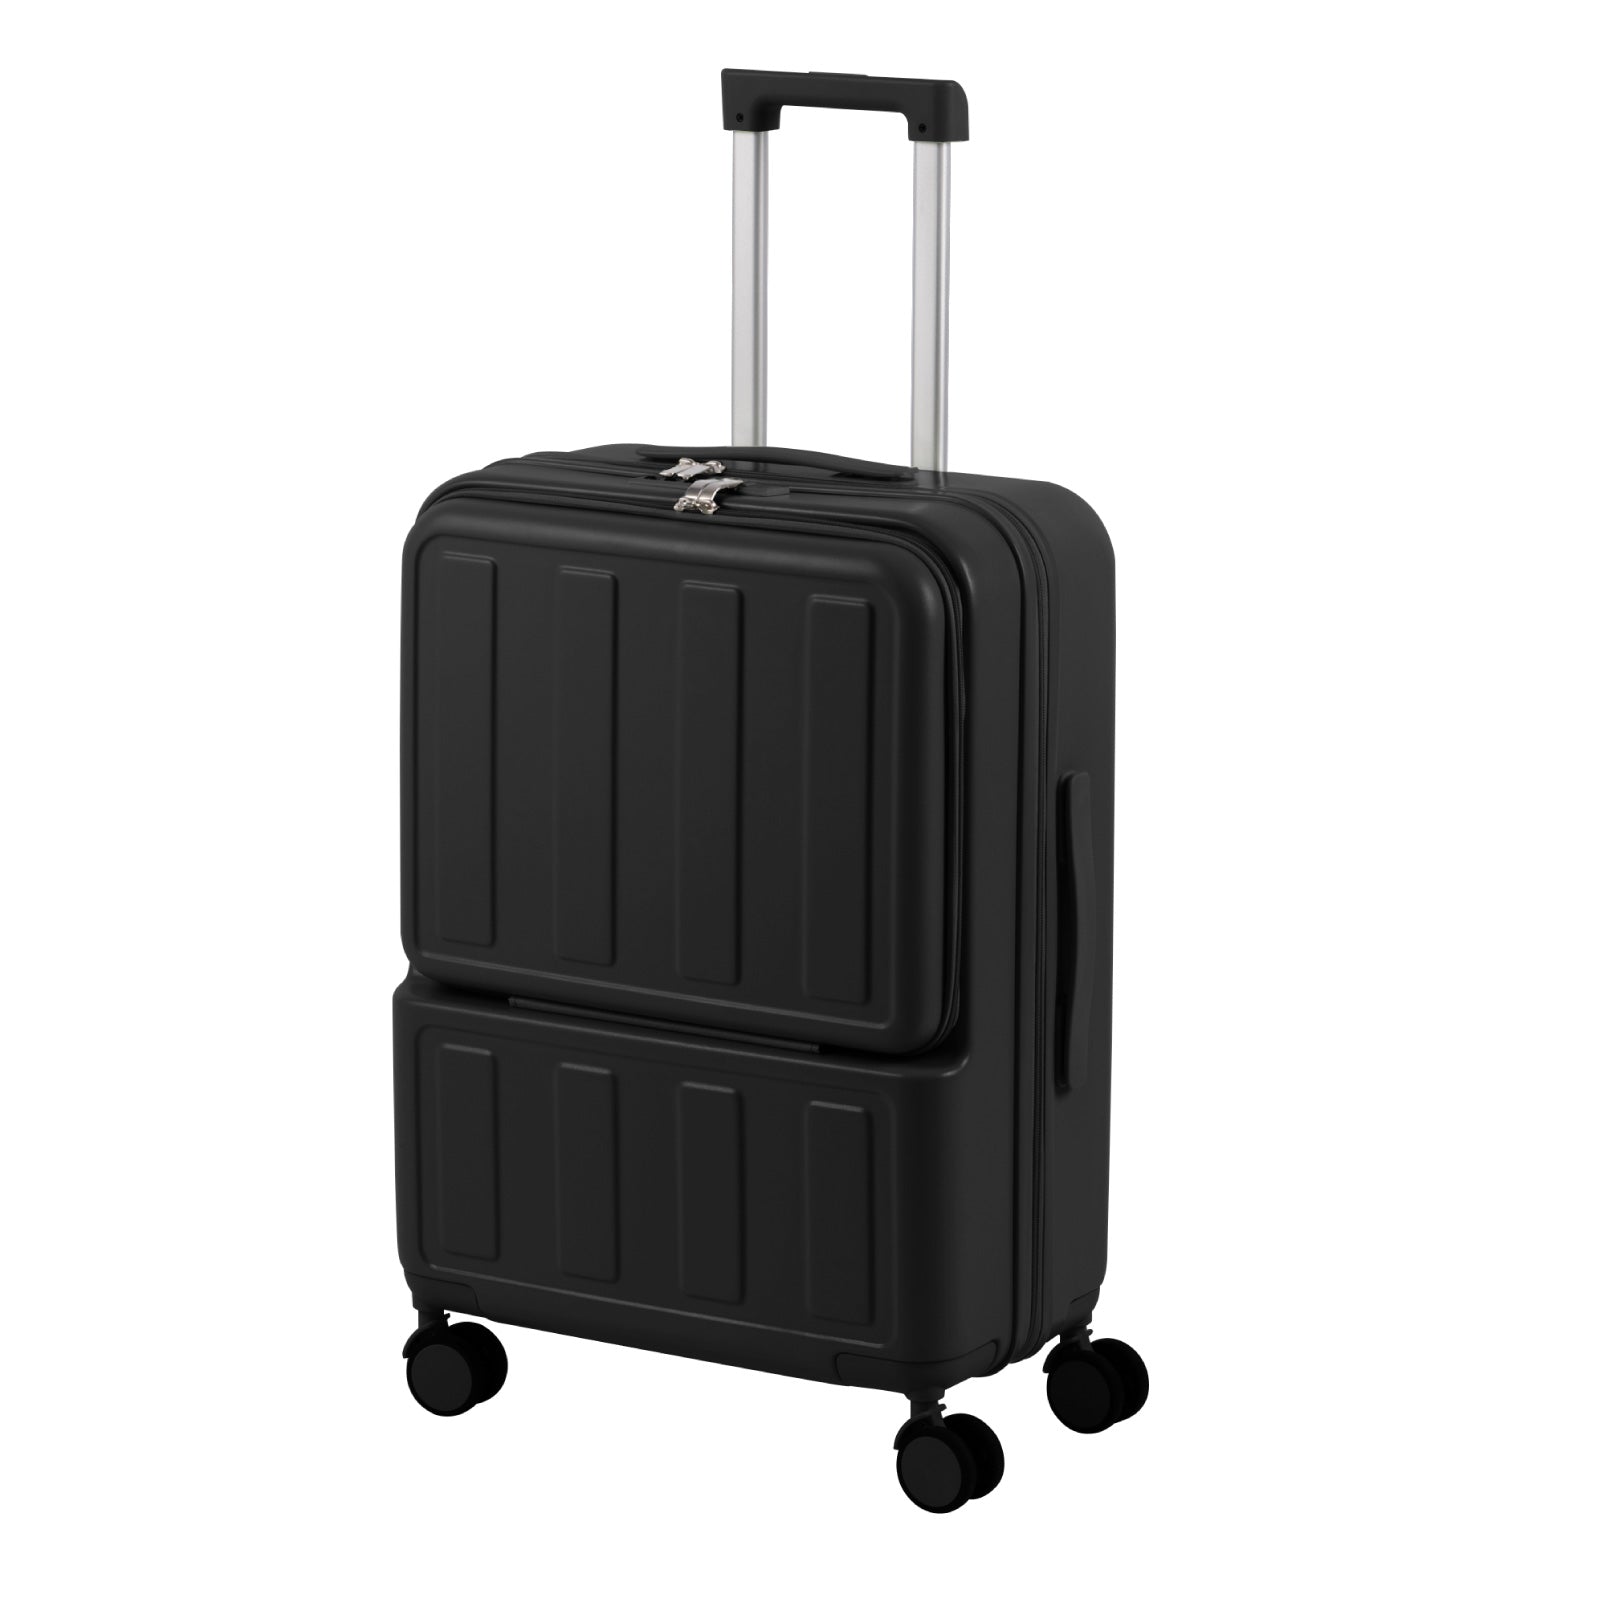 前開き スーツケース USBポート付き キャリーケース Mサイズ キャリーバッグ 5カラー選ぶ フロントオープン 4-7日用 泊まる 軽量設計 大容量 多収納ポケット 修学旅行 海外旅行 国内旅行 sc503-24